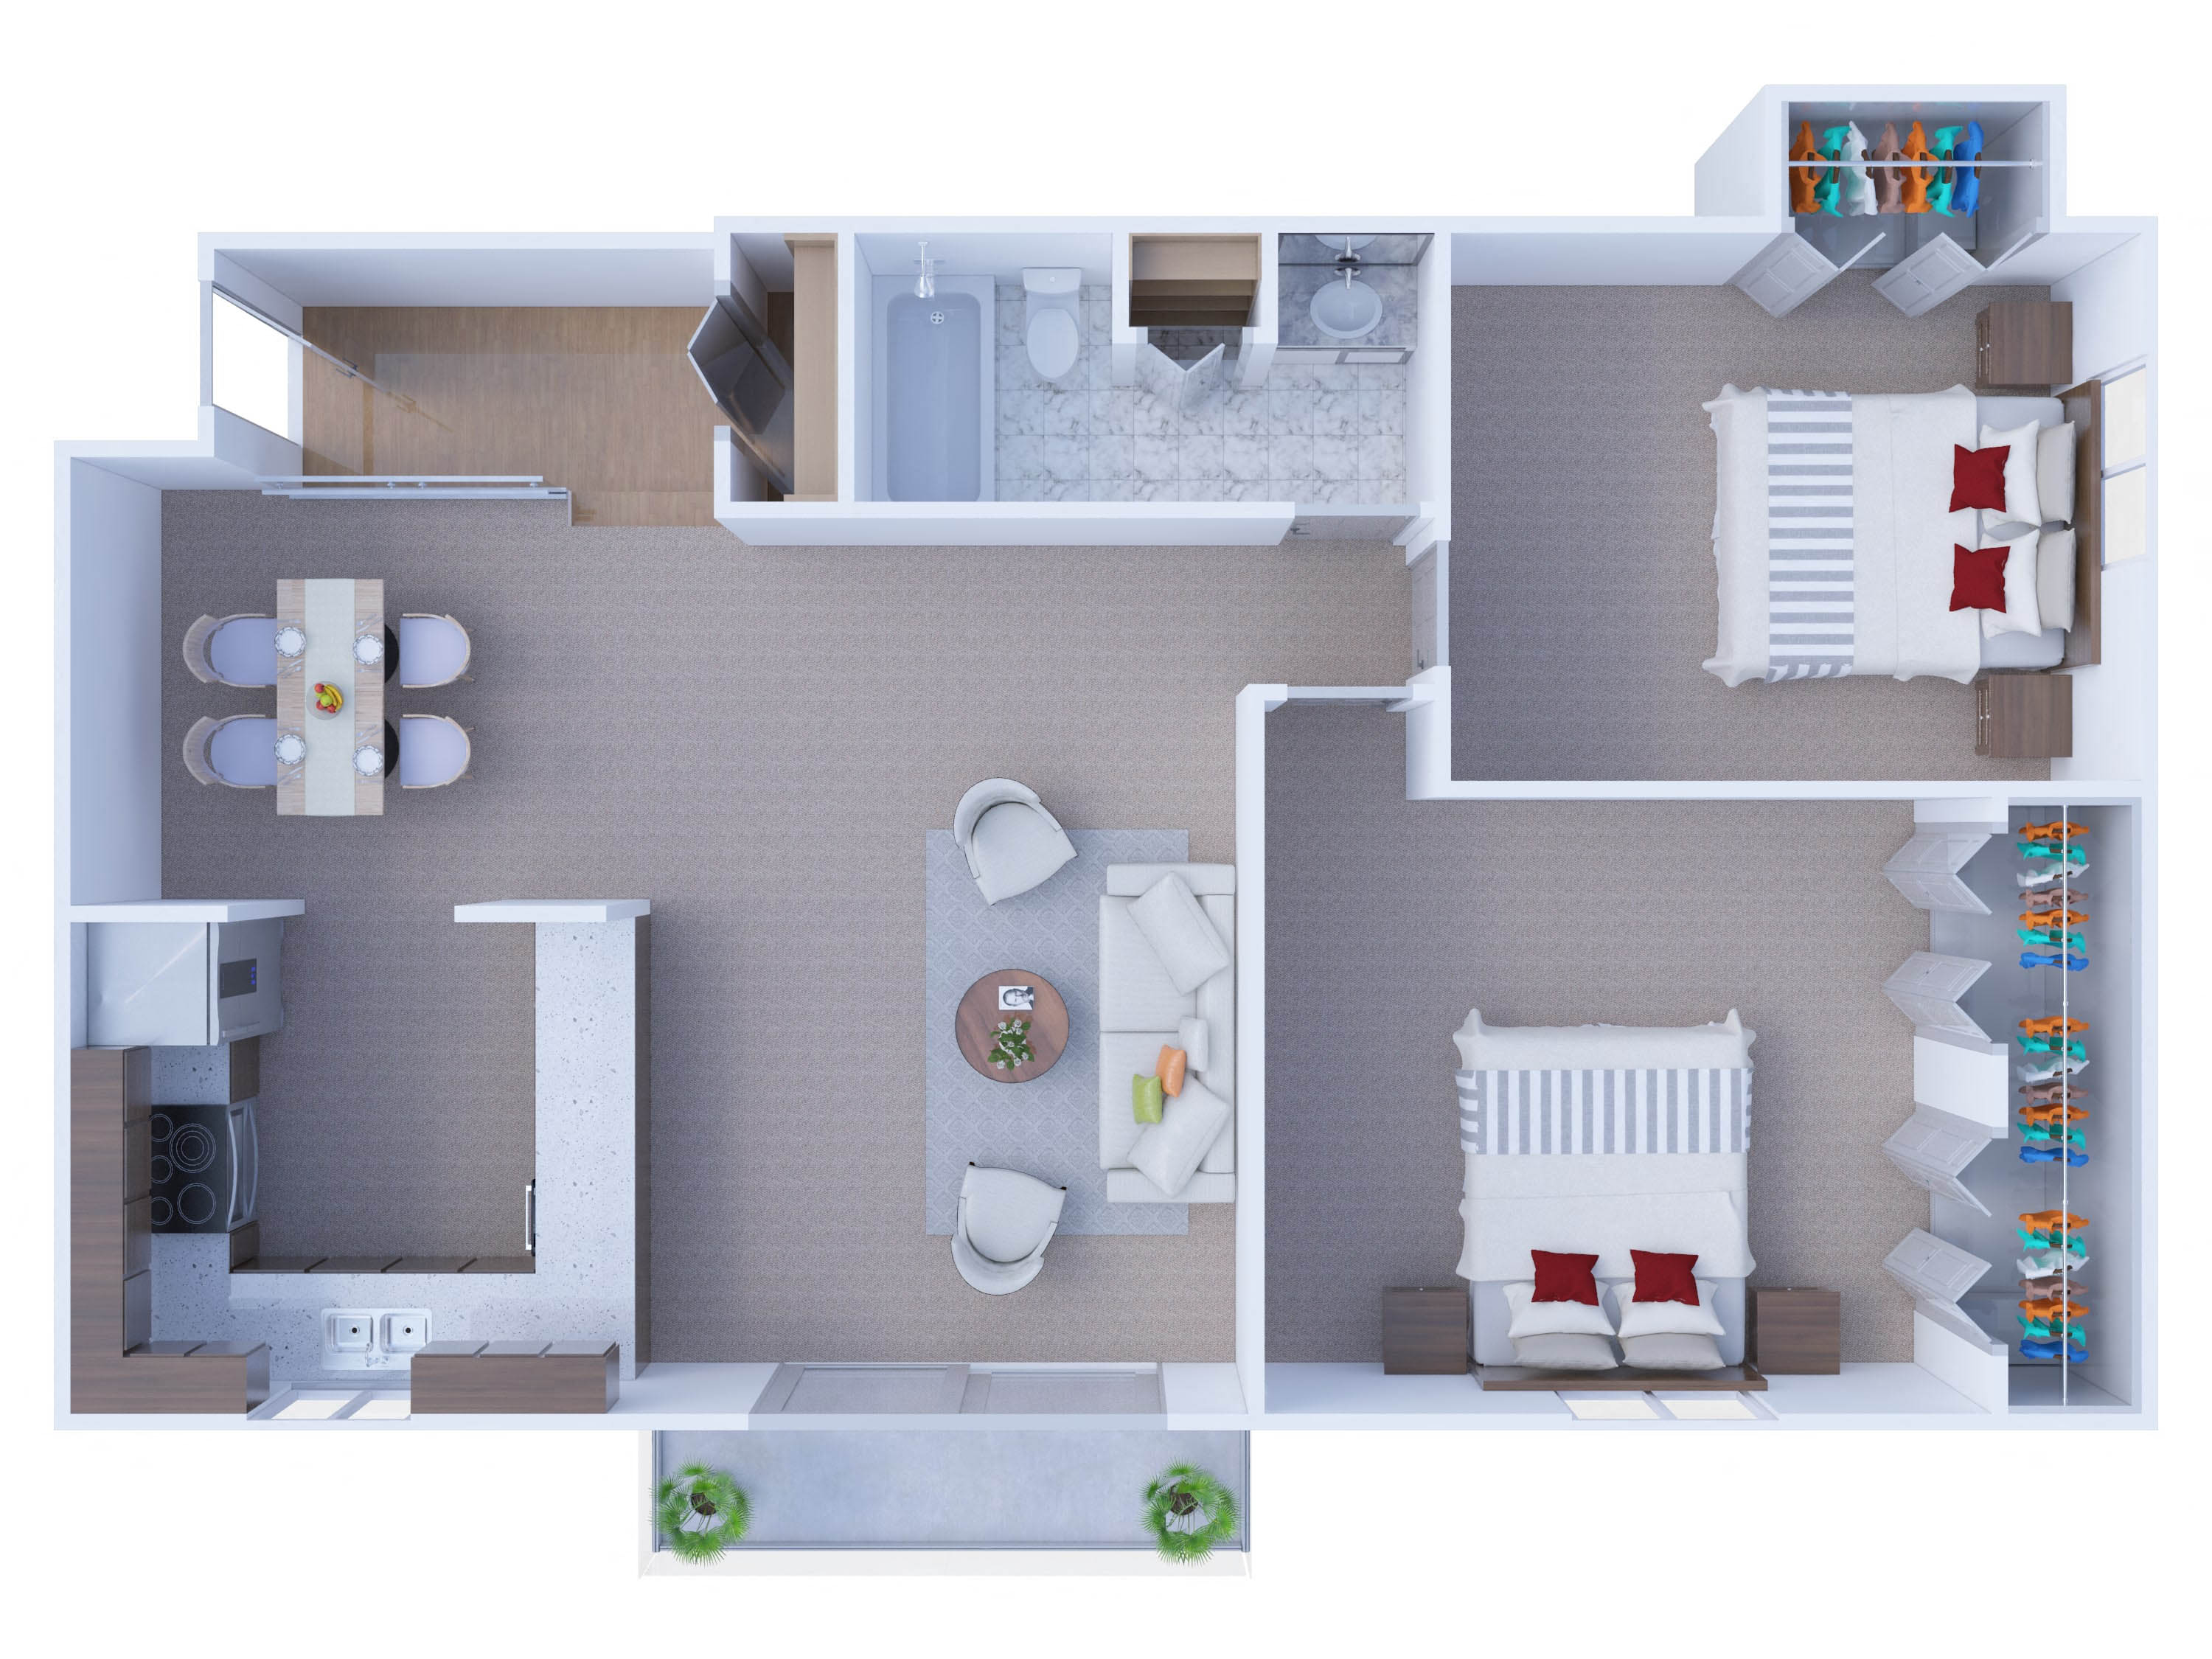 2 Bedrooms Floor Plan B1